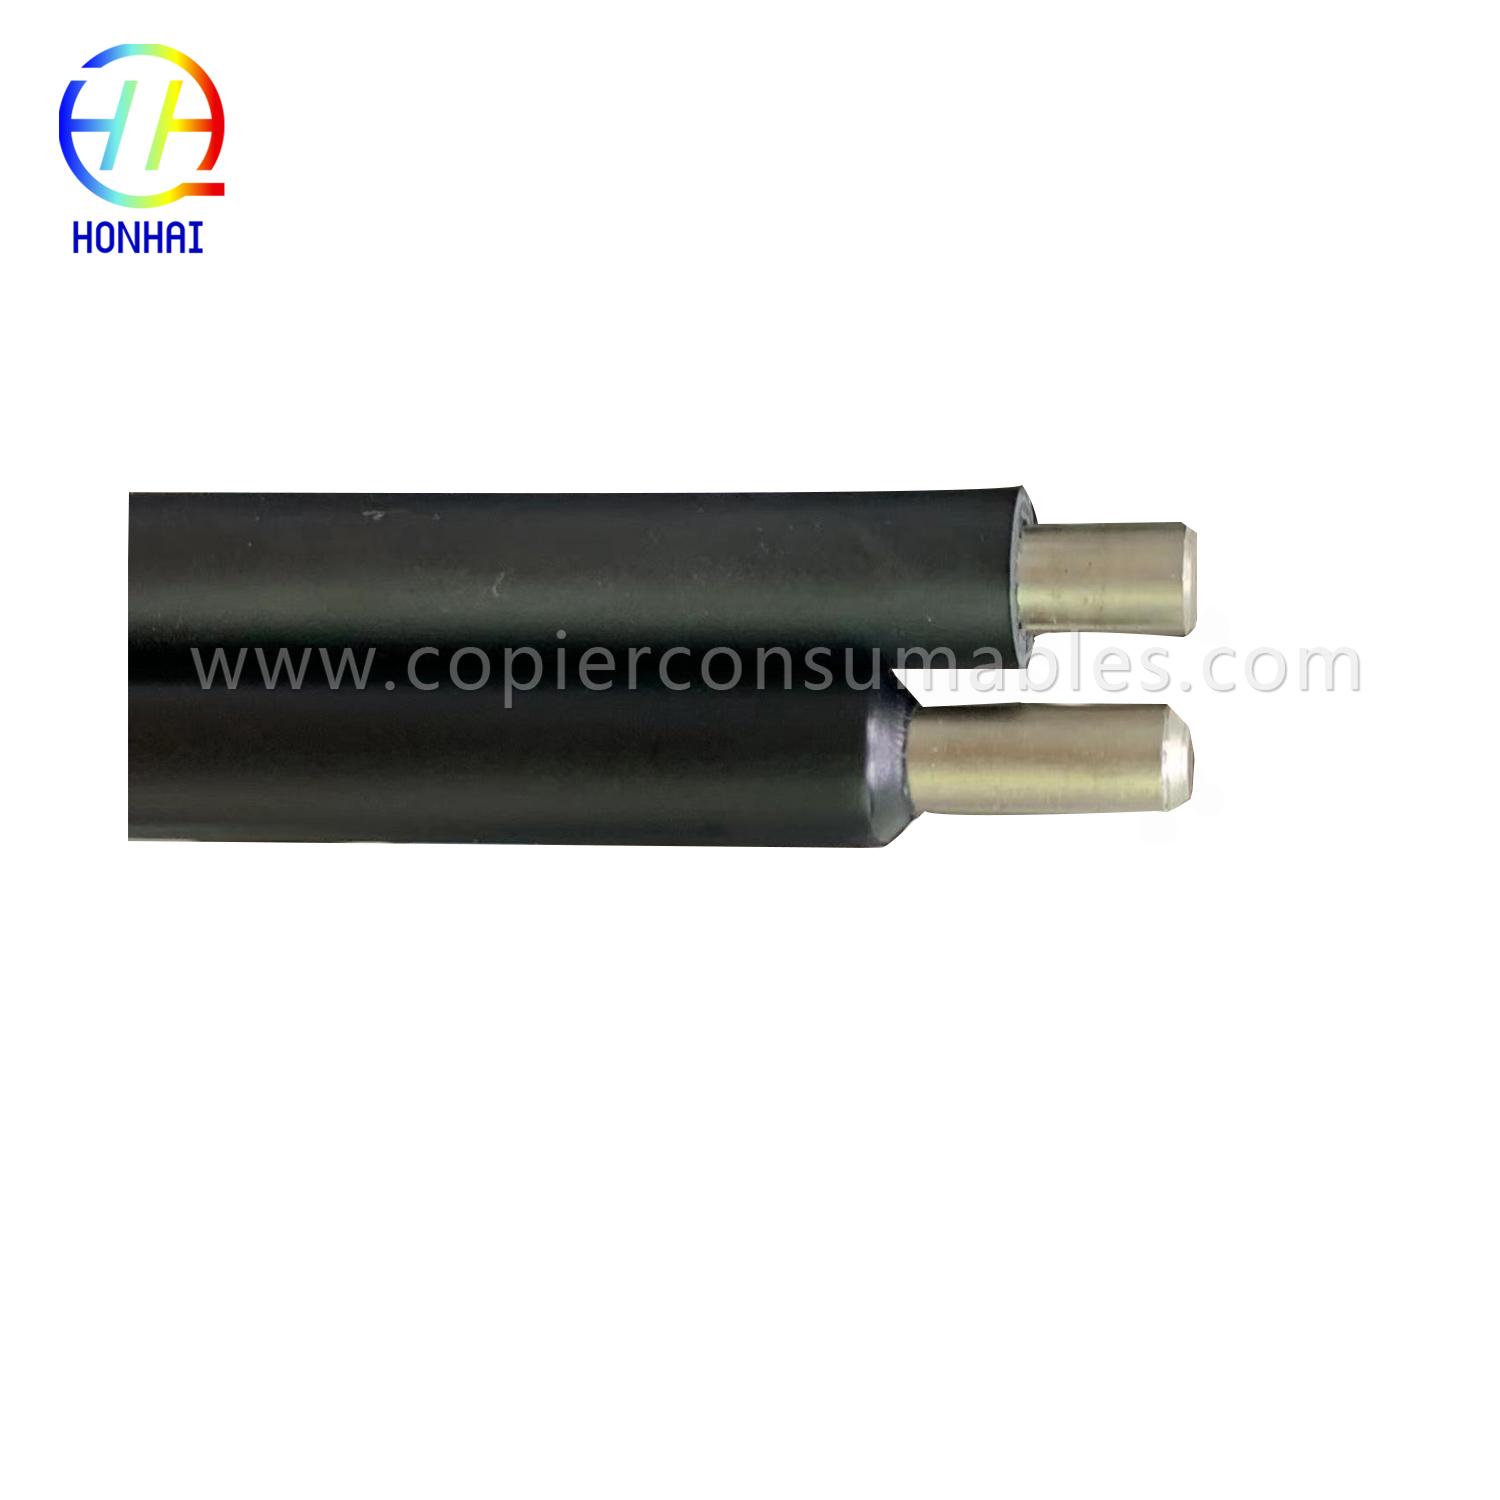 Pangunahing Charge Roller para sa HP LaserJet 9000 9040 9050 (RG5-5750-000 C8519-69035 C8519-69033) OEM